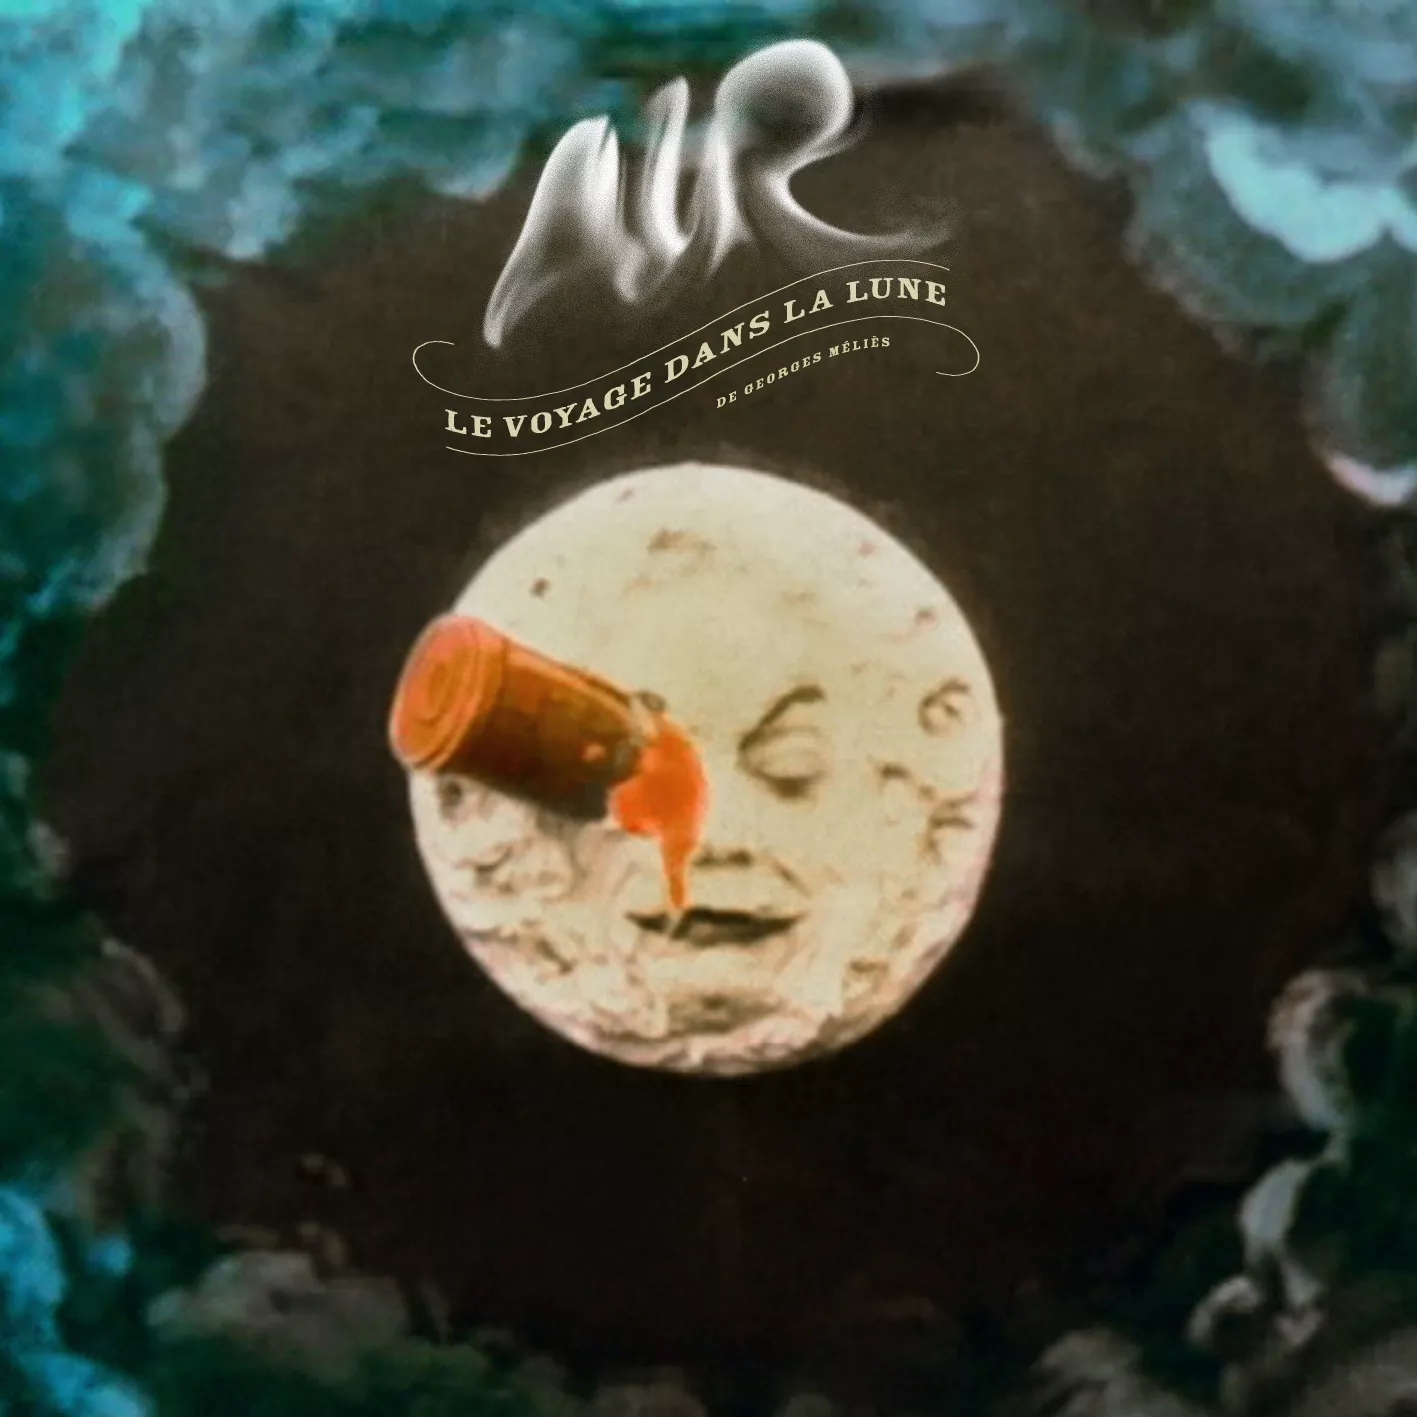 Air slipper nytt album i februar